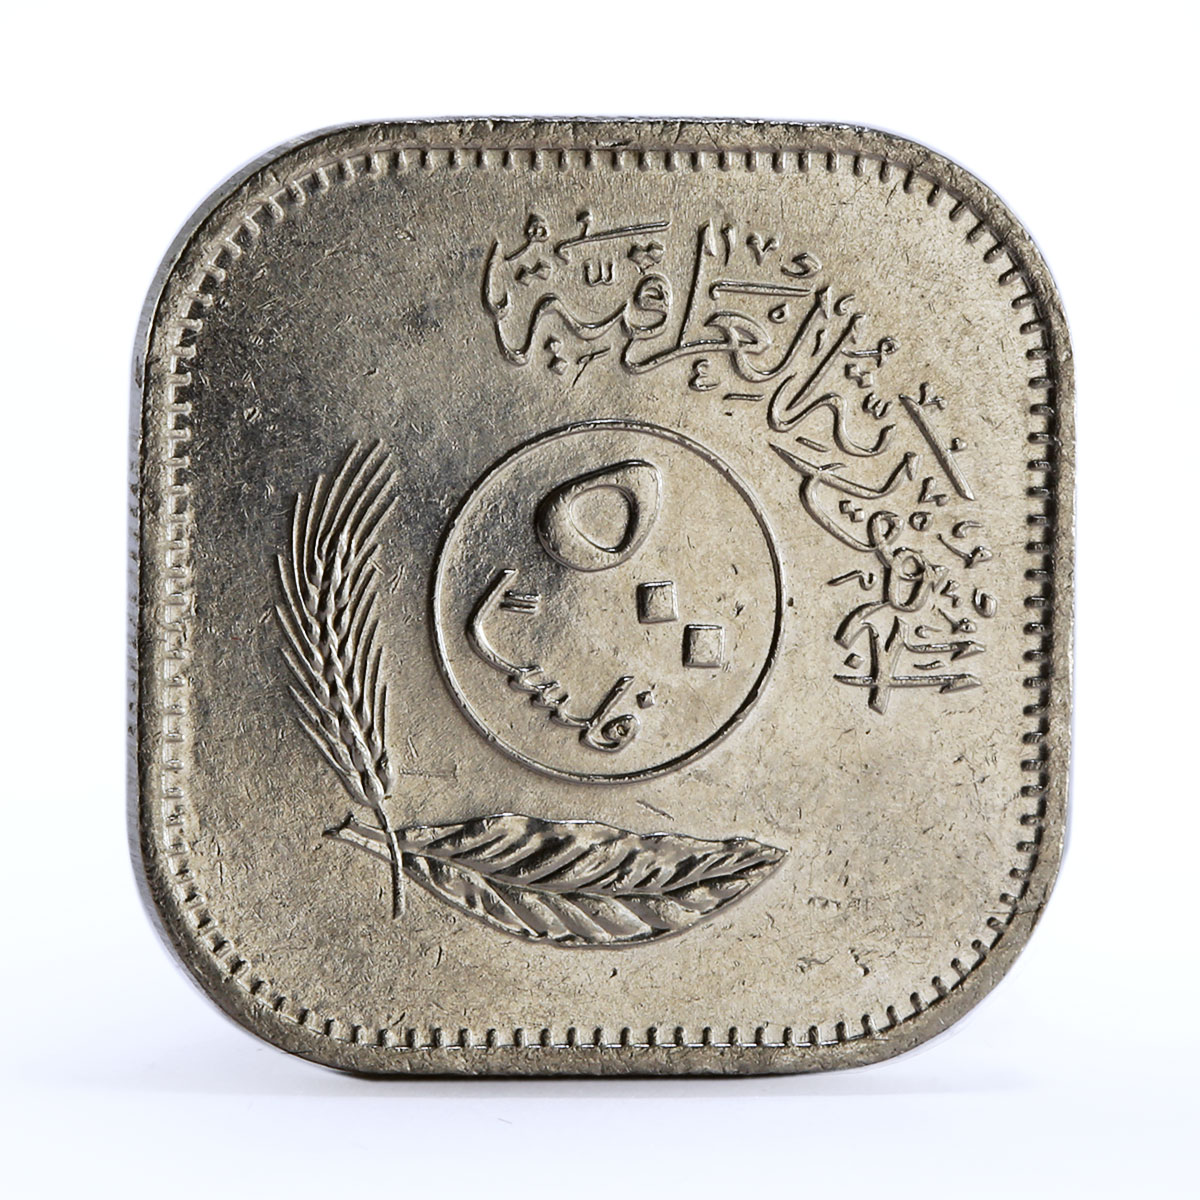 Iraq 500 fils Falsan Error Palm Trees nickel coin 1982